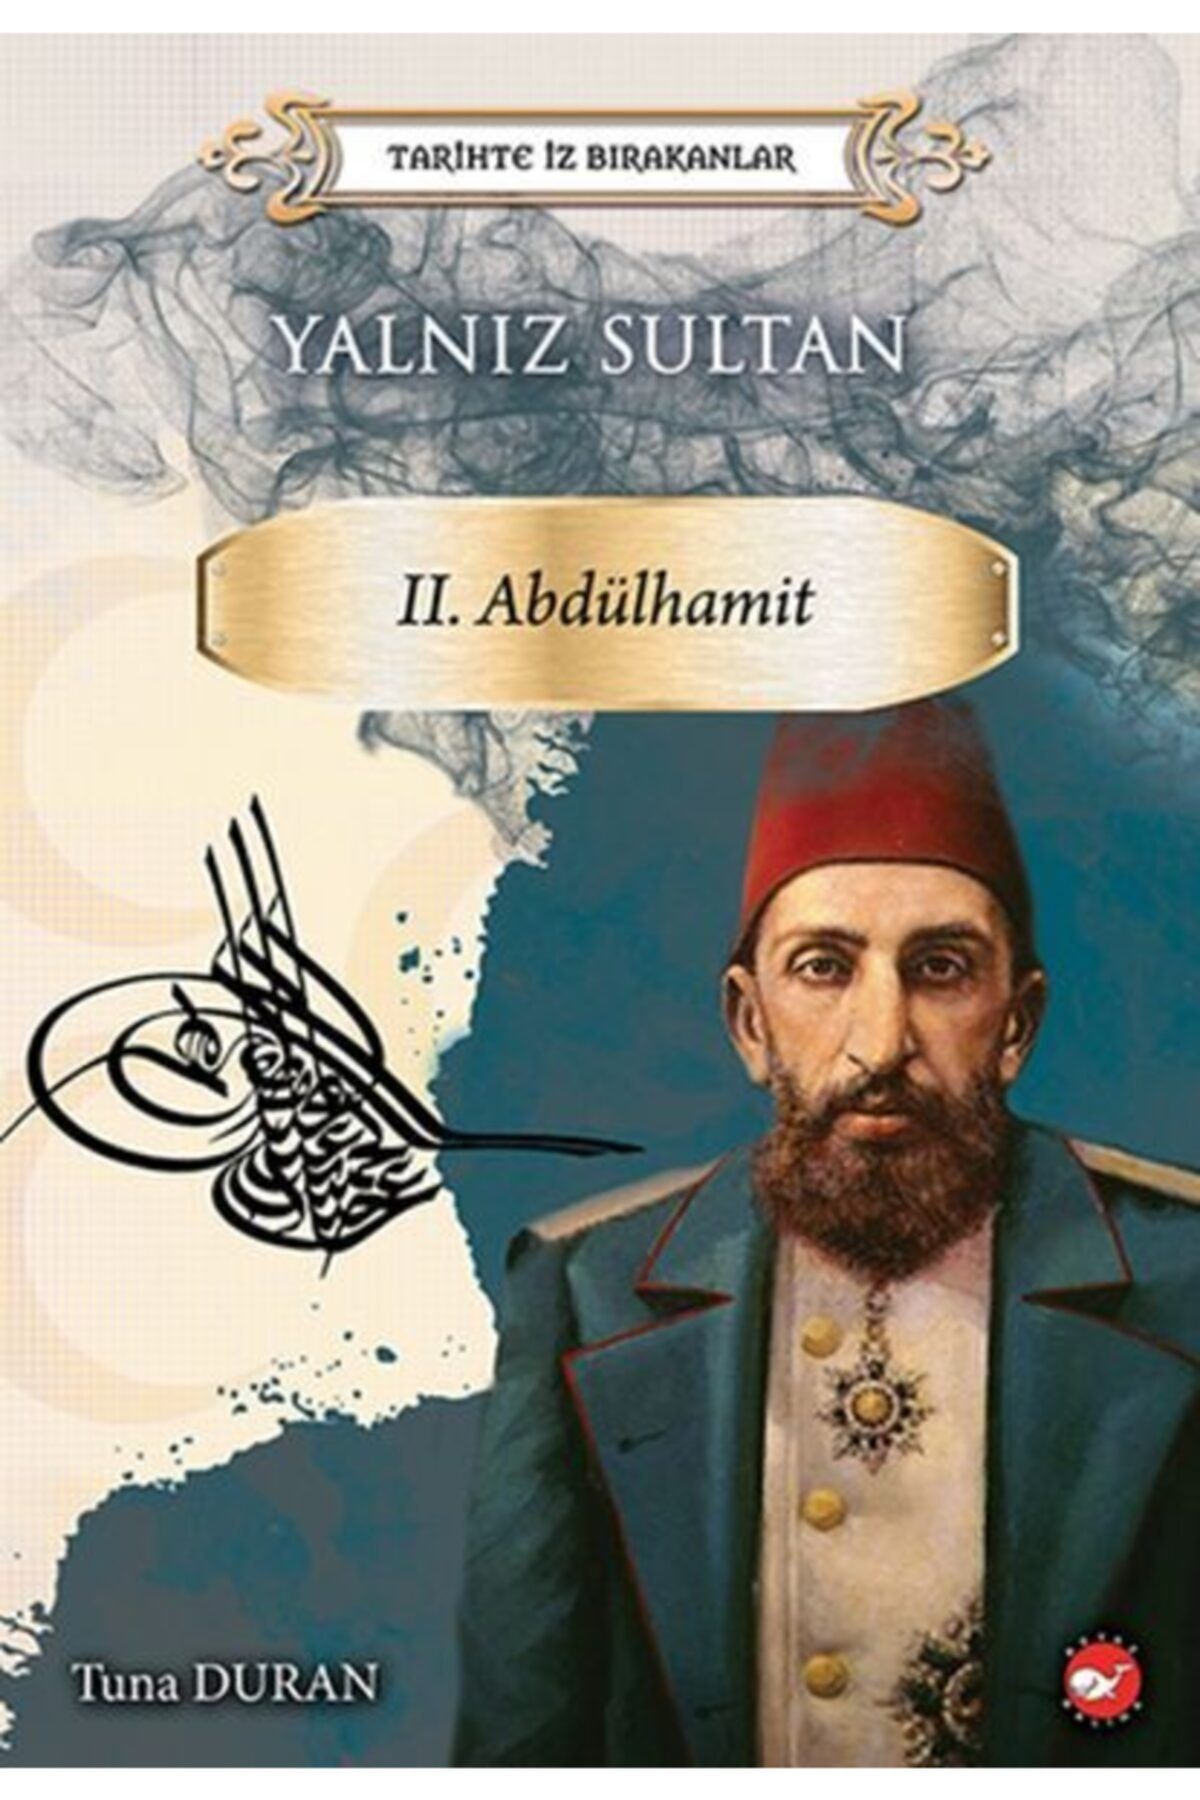 Beyaz Balina Yayınları Yalnız Sultan Iı. Abdülhamit